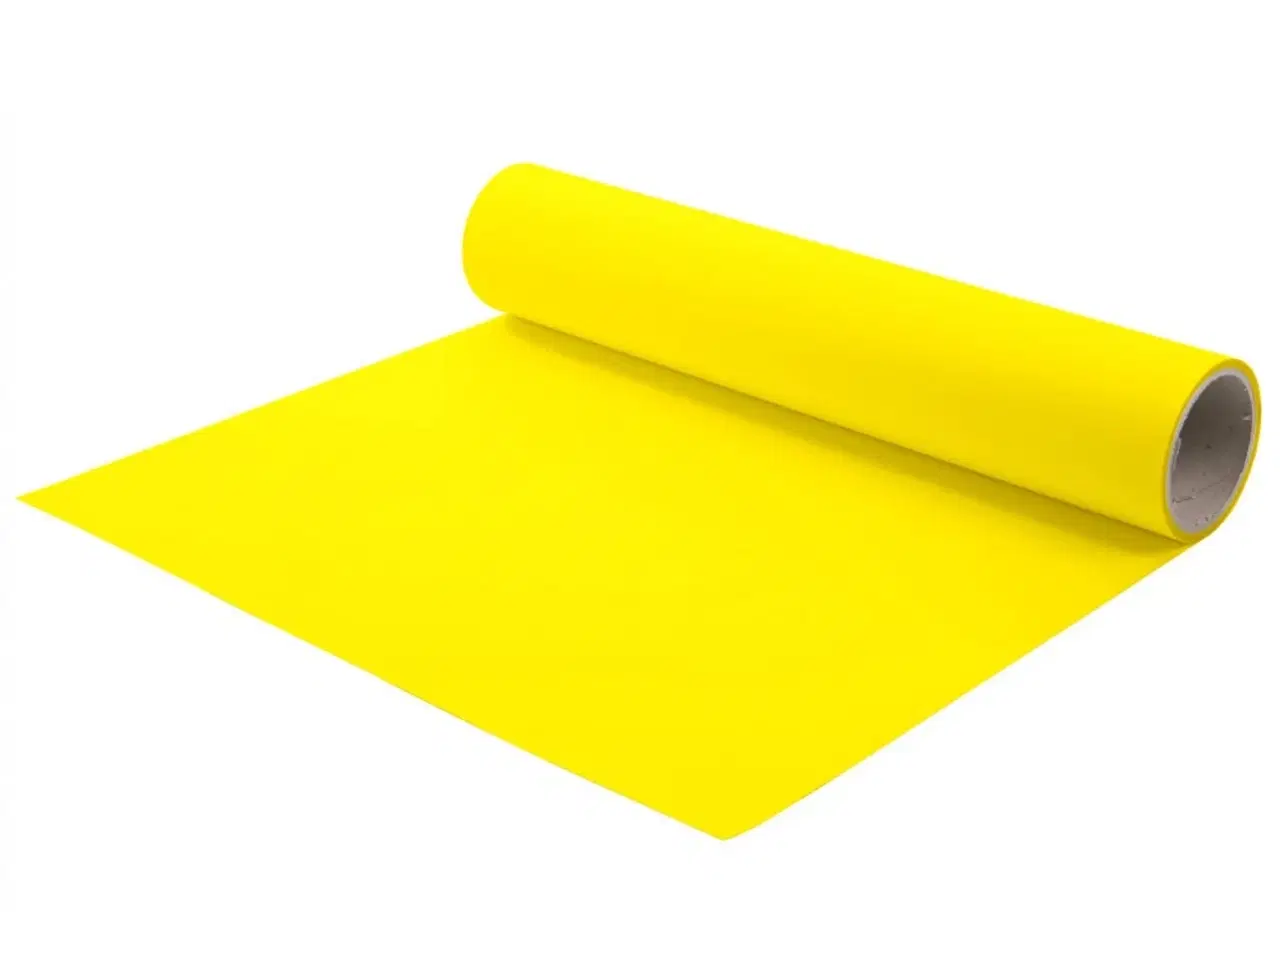 Billede 1 - Chemica Hotmark - Lemon Gul - Lemon Yellow - 413 - tekstil folie